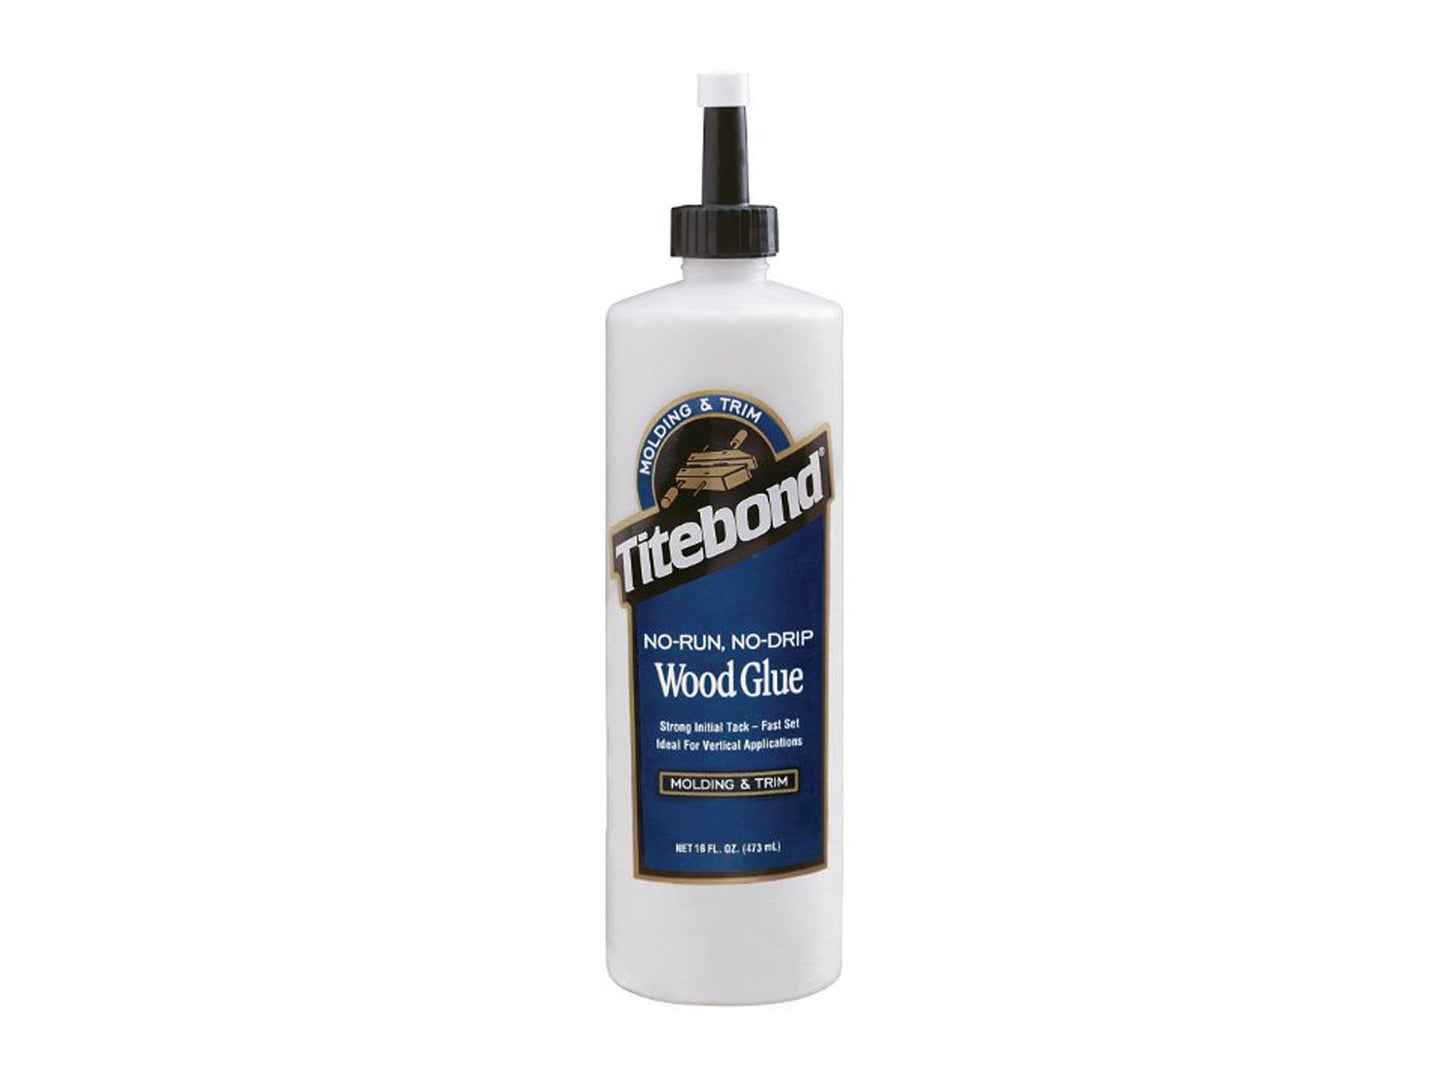 Titebond 2404 No-Run, No-Drip Wood Glue - 473ml 16 fl oz